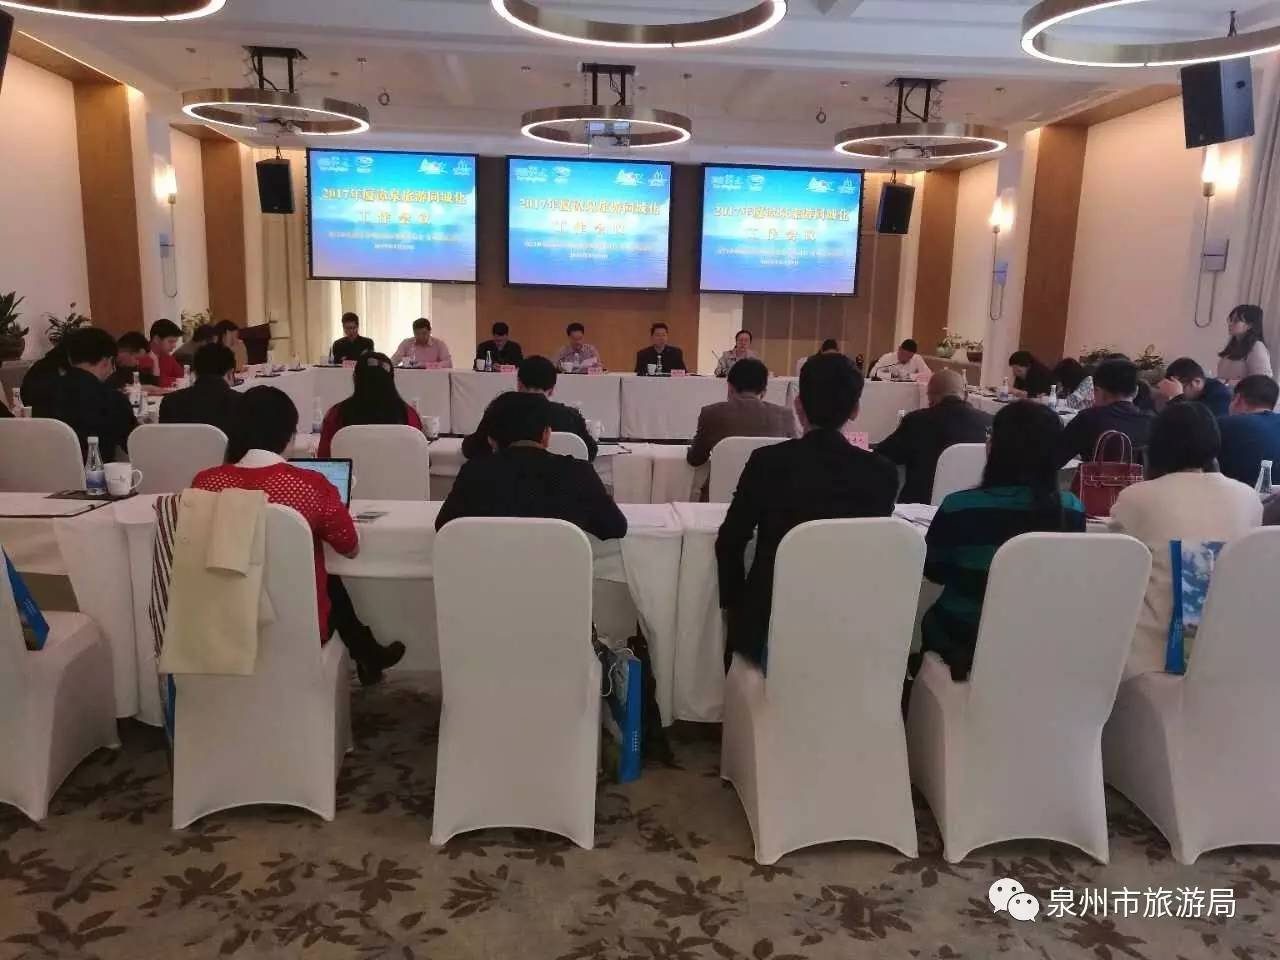 2017年厦漳泉旅游同城化工作会议在漳州召开